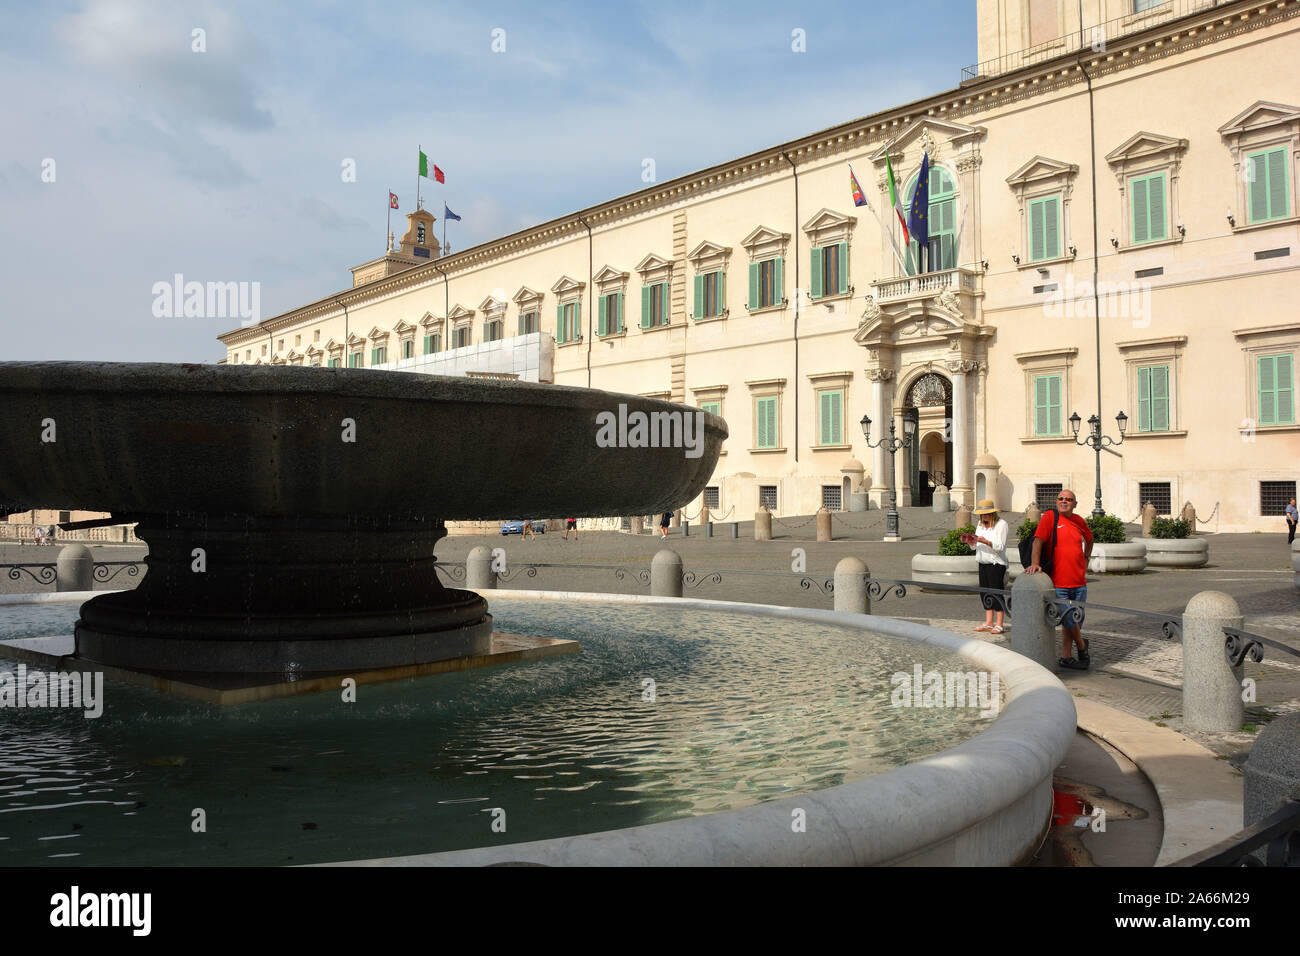 Quirinal Palast an der Piazza del Quirinale in Rom. Residenz des Präsidenten der Italienischen Republik - Italien. Stockfoto